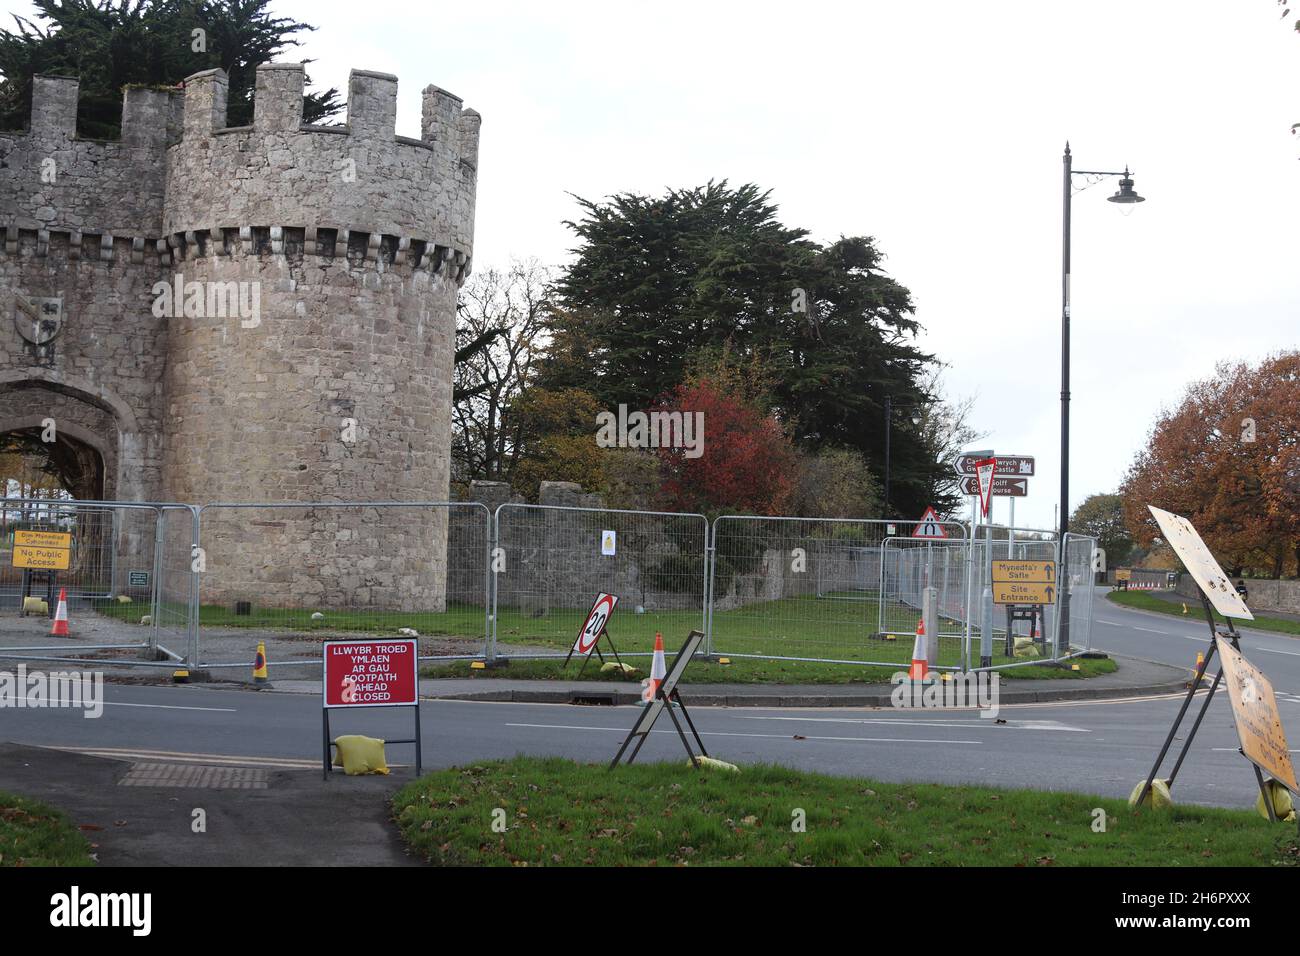 Gwrych Castle Abergele Wales .Fotos zeigen Vorbereitungen das I'm a Celebrity Castle ist im Gange und von Zäunen und Sicherheitskräfte umgeben, mit einer Geschwindigkeitsbegrenzung von 20 MPH auf der Straße um das Schloss herum Stockfoto